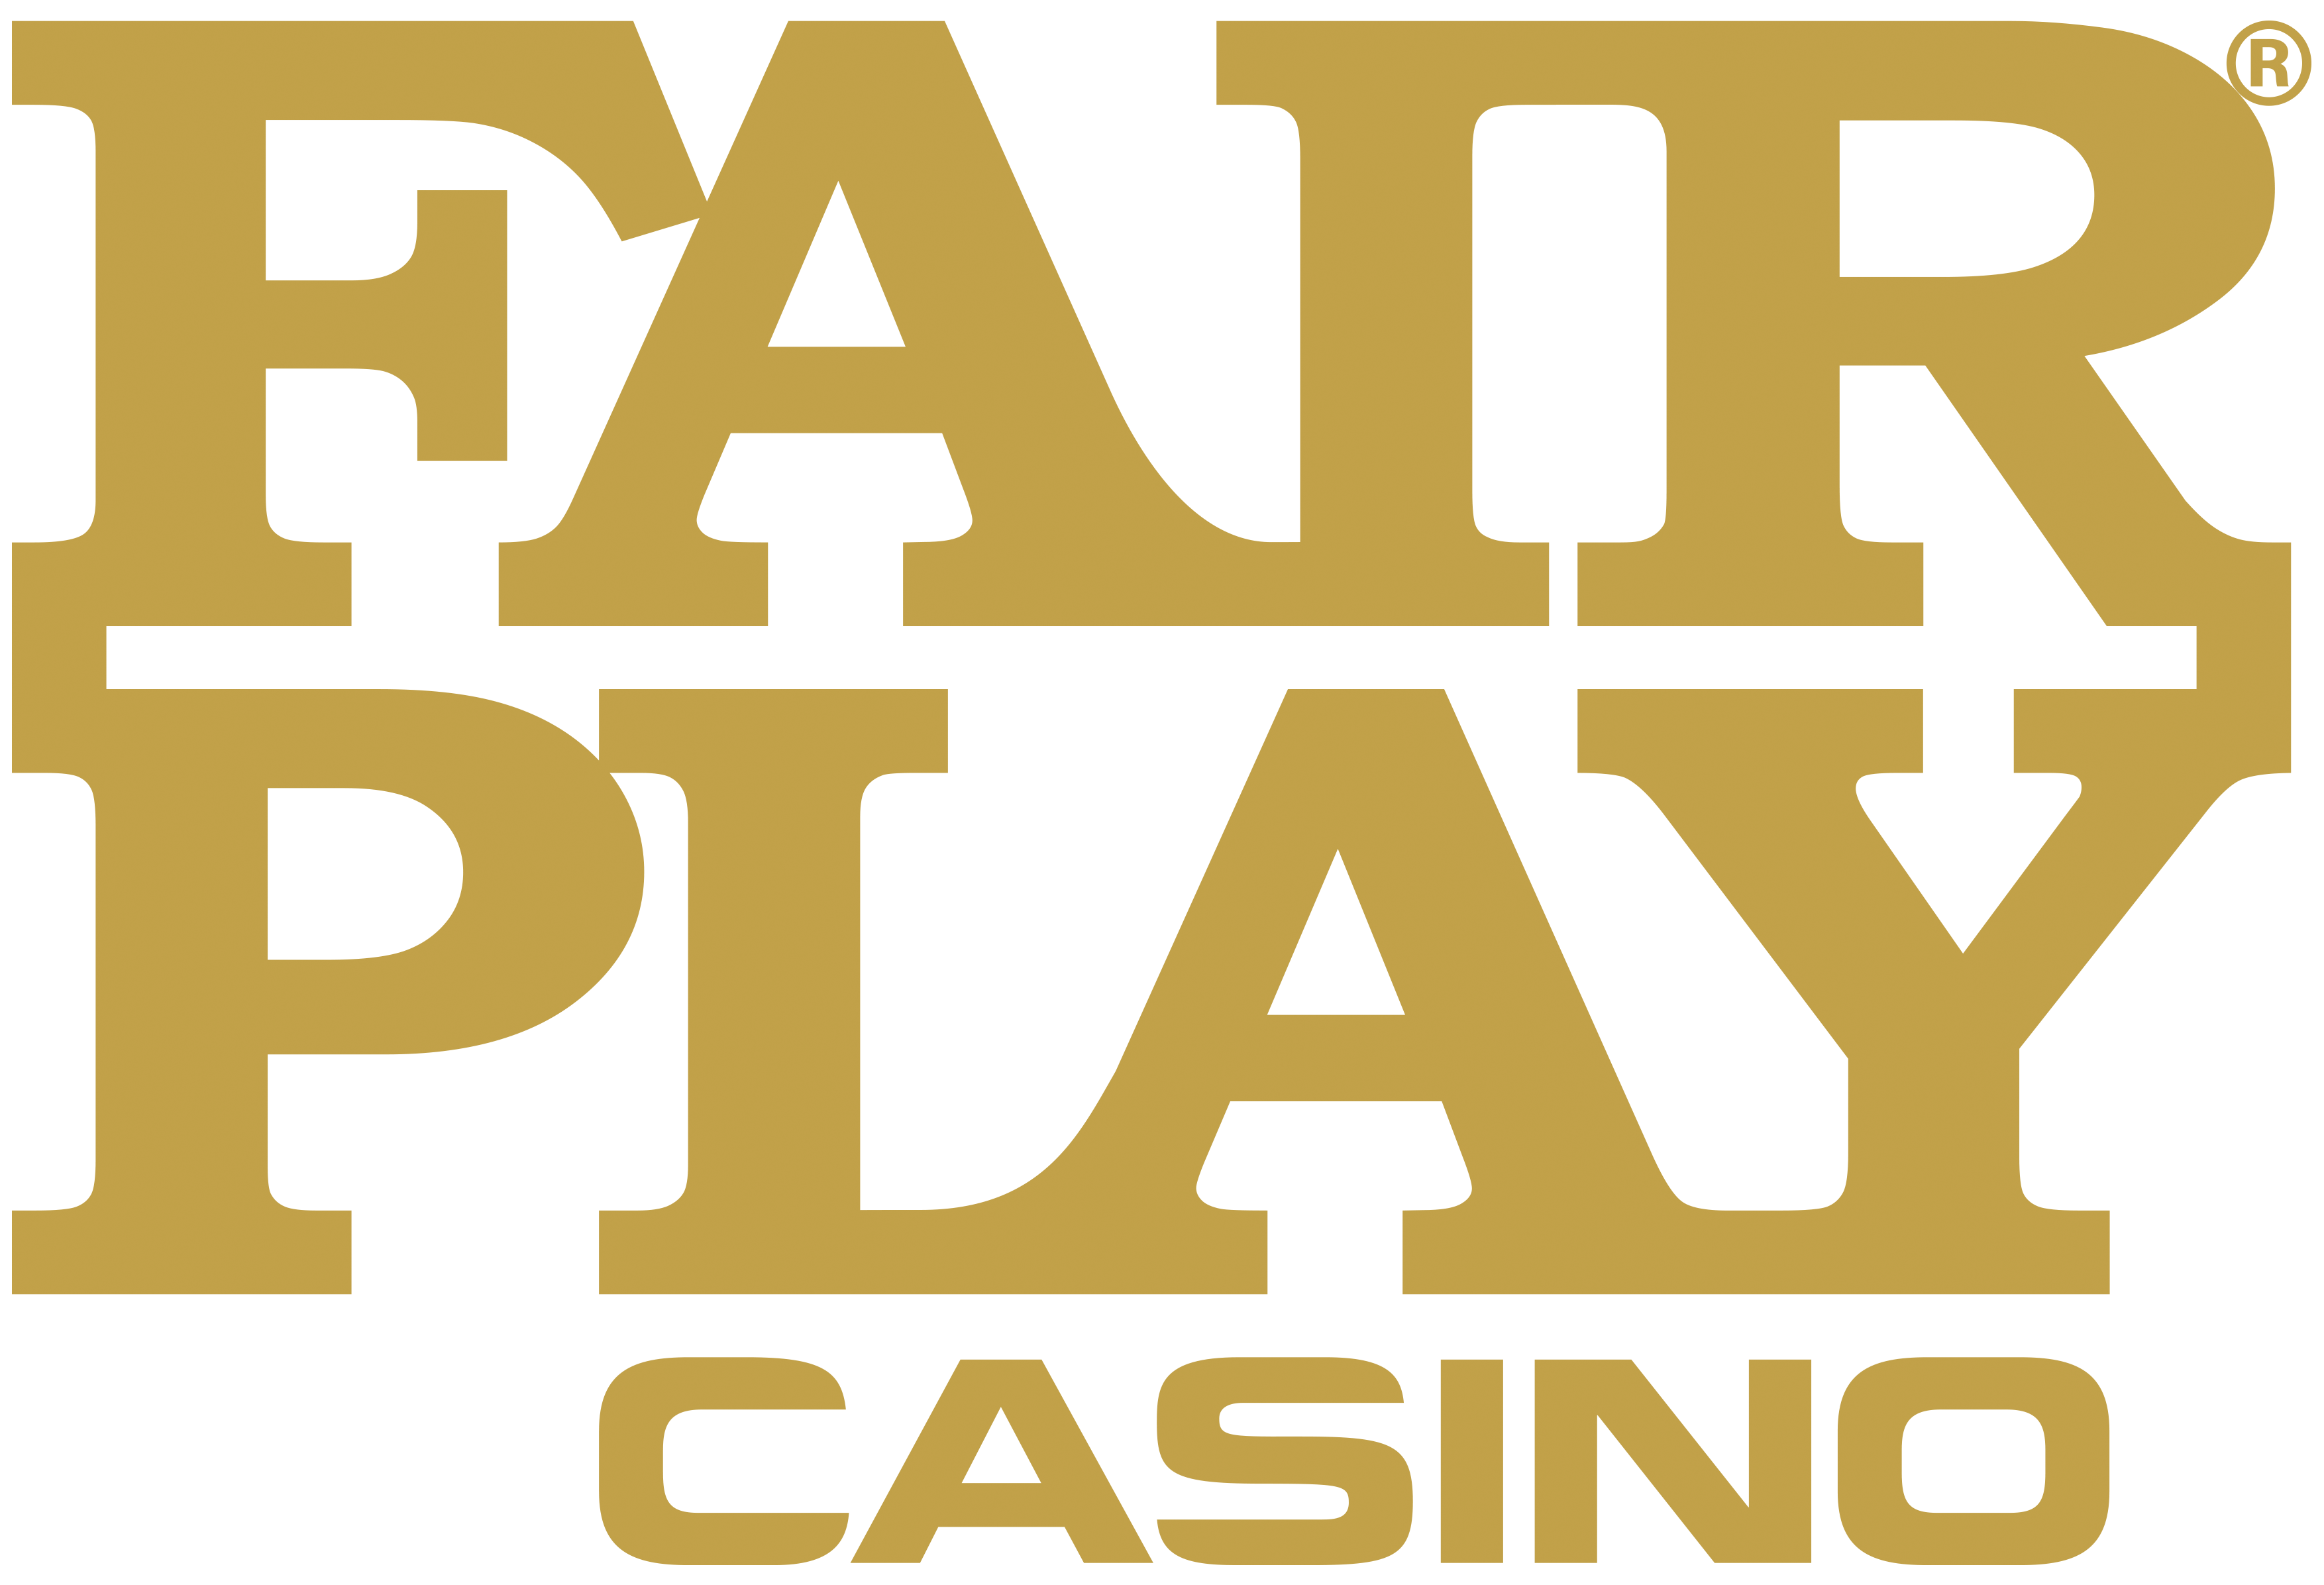 Fair Play Casino logo